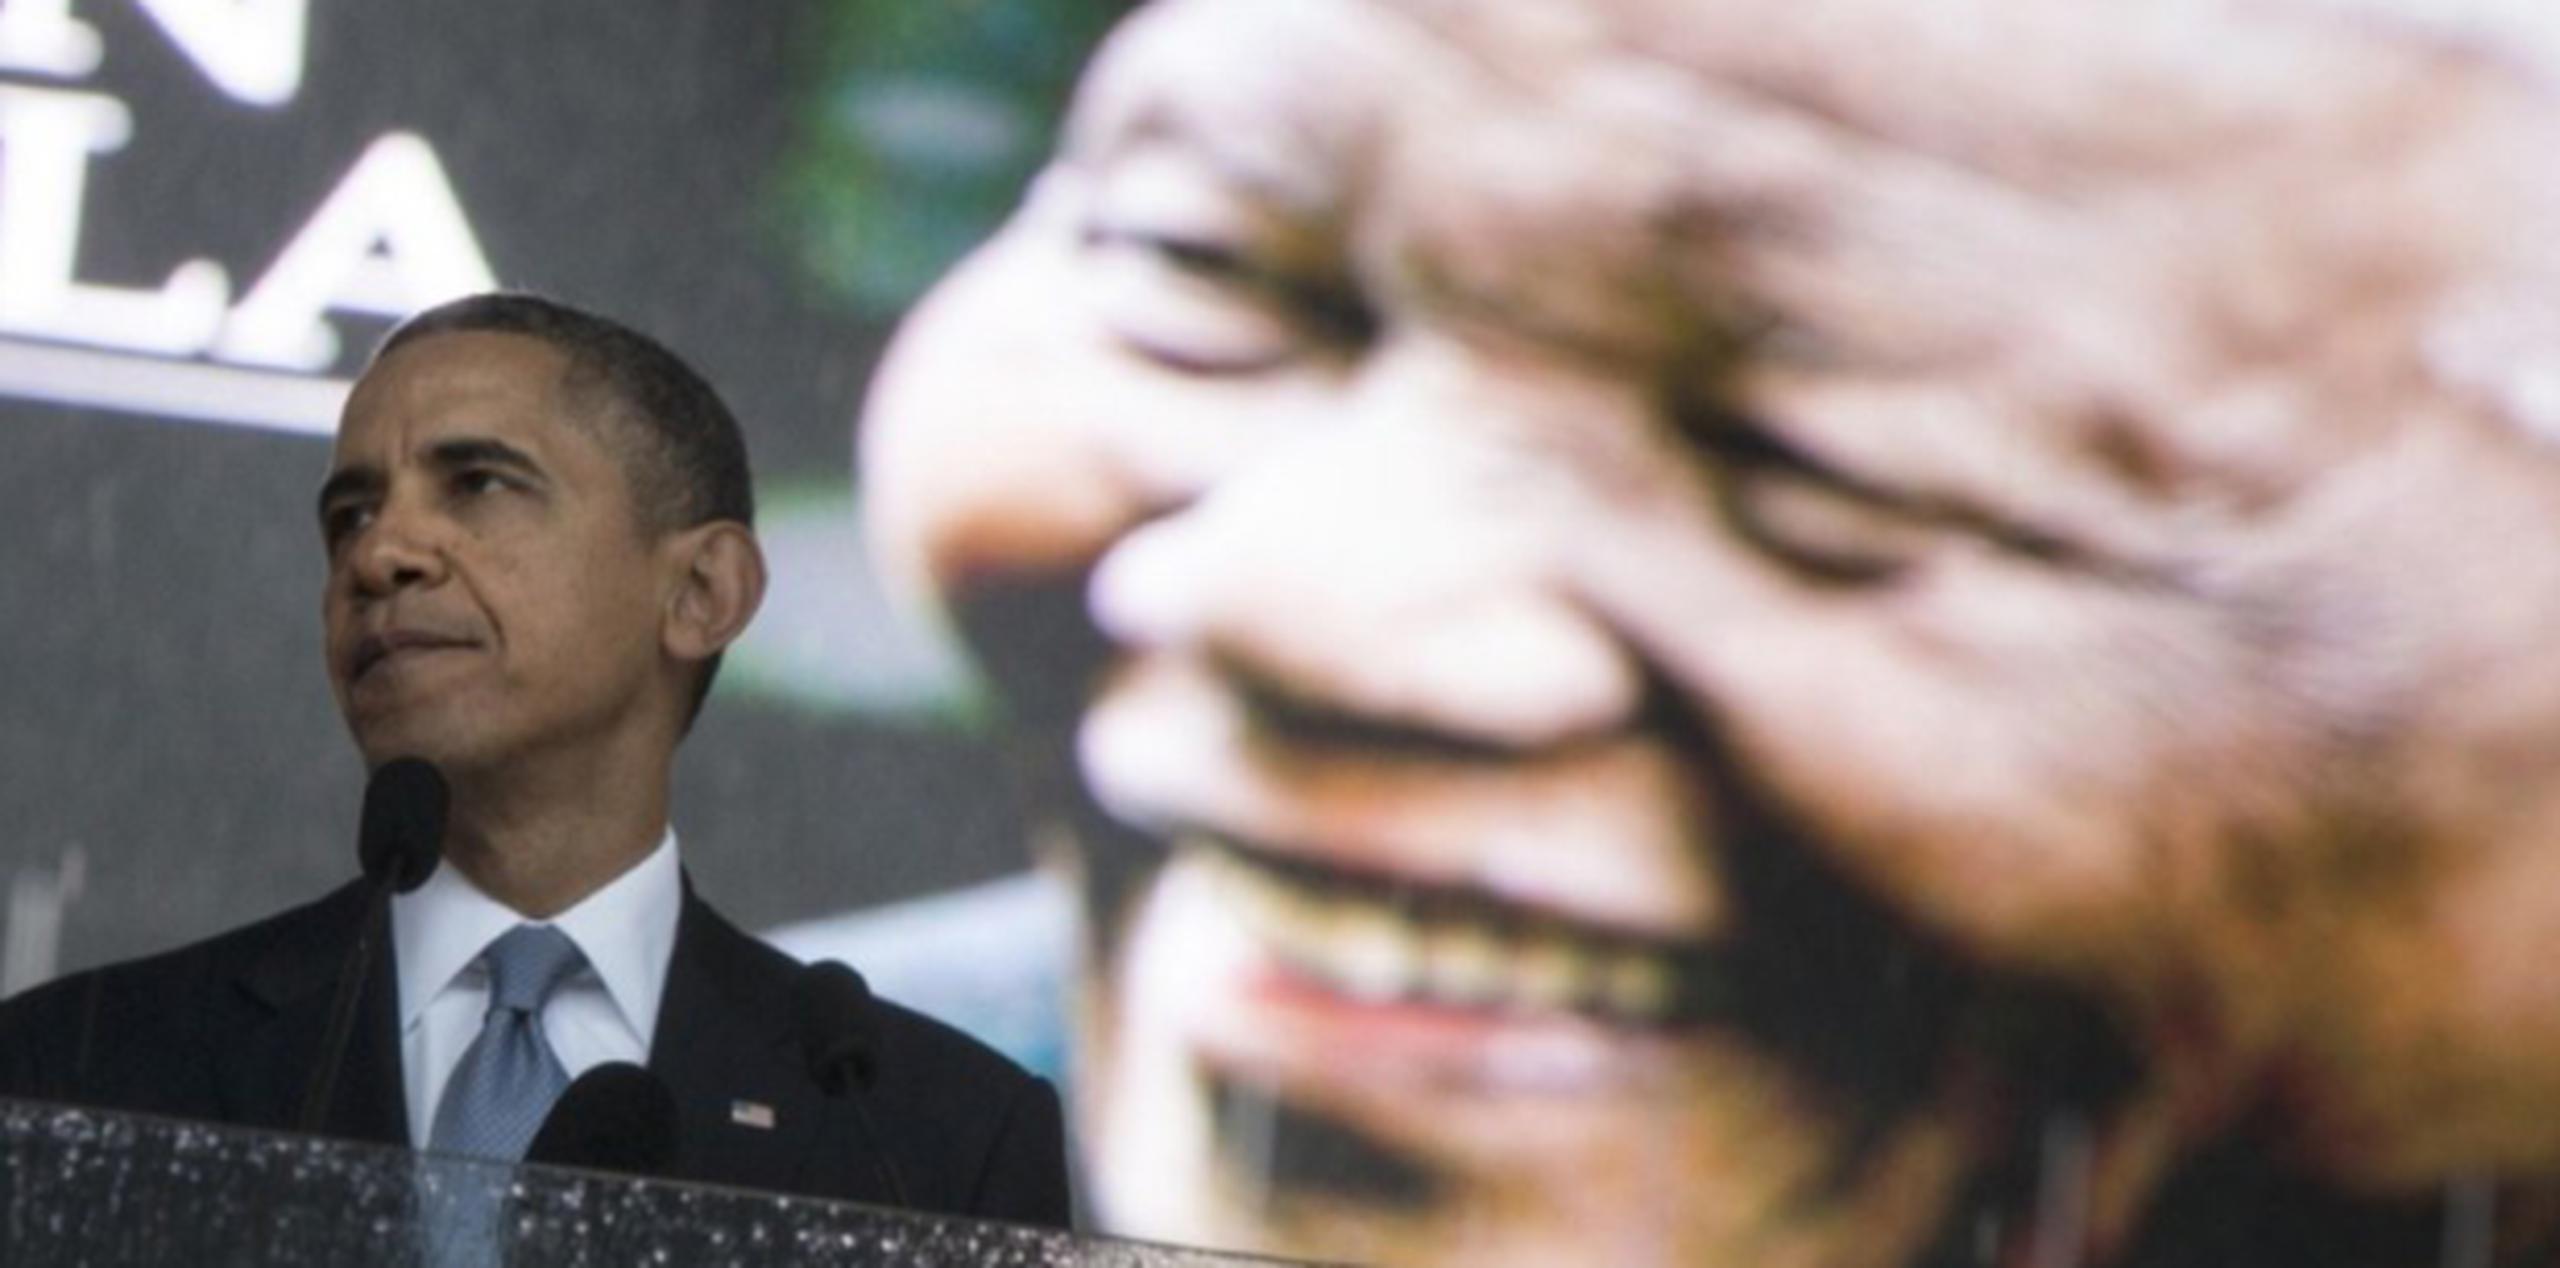 Obama reseñó la influencia de Mandela en su propia vida y reveló que siempre se pregunta si ha sabido aplicar las lecciones del líder sudafricano a sí mismo como hombre y como presidente. (AFP)